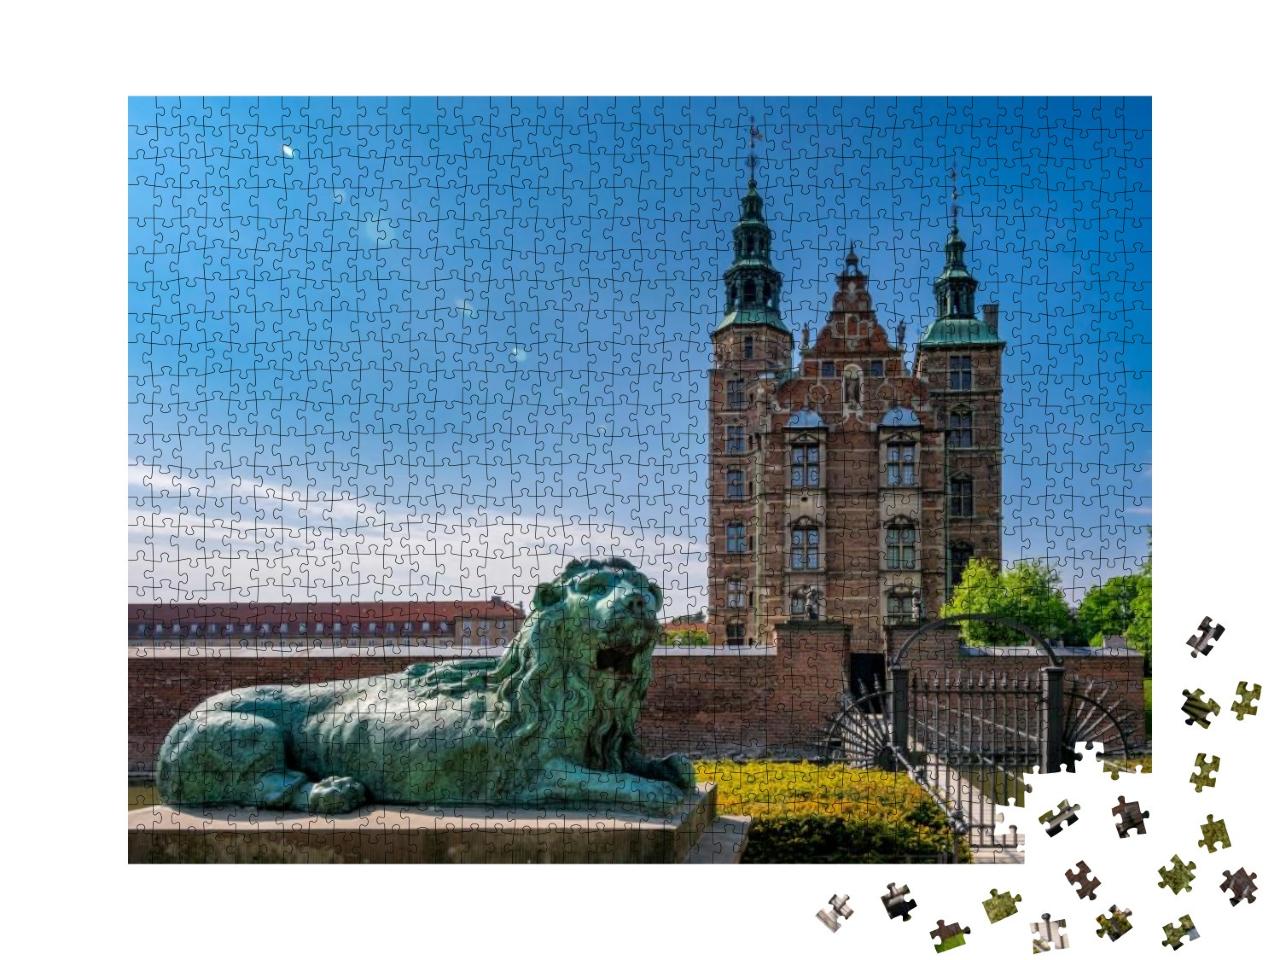 Puzzle 1000 Teile „Schloss Rosenborg in Kopenhagen, Hauptstadtregion von Dänemark“